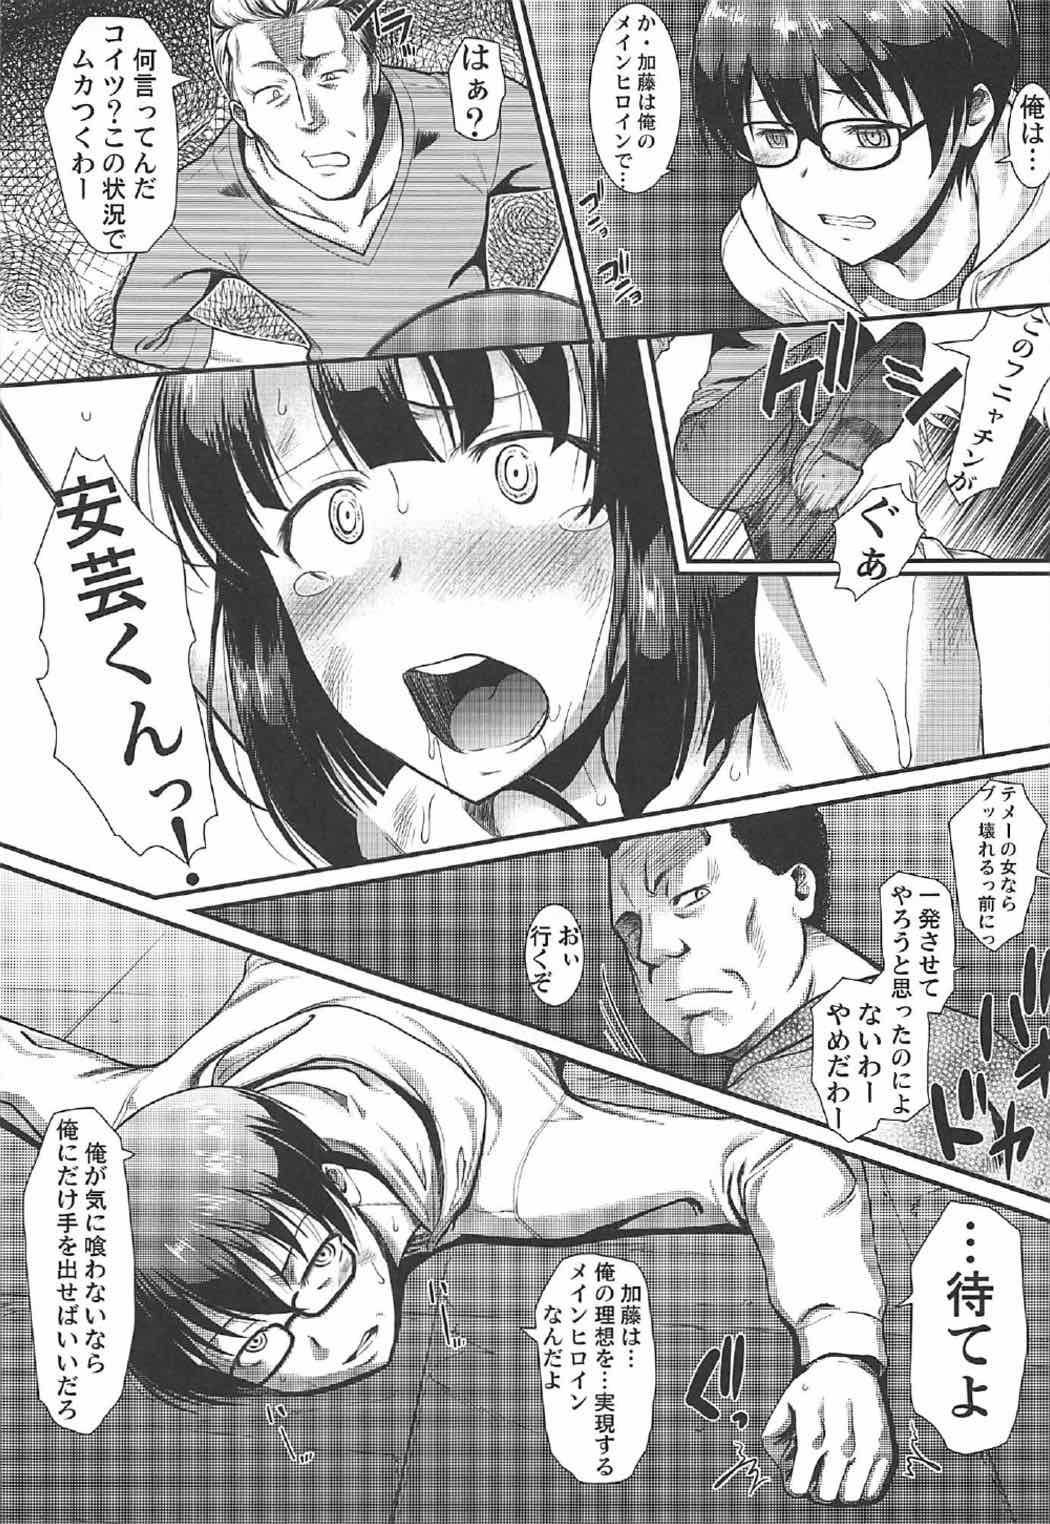 Little Kimi wa Boku no Taiyou da 2 - Saenai heroine no sodatekata Amatuer - Page 8